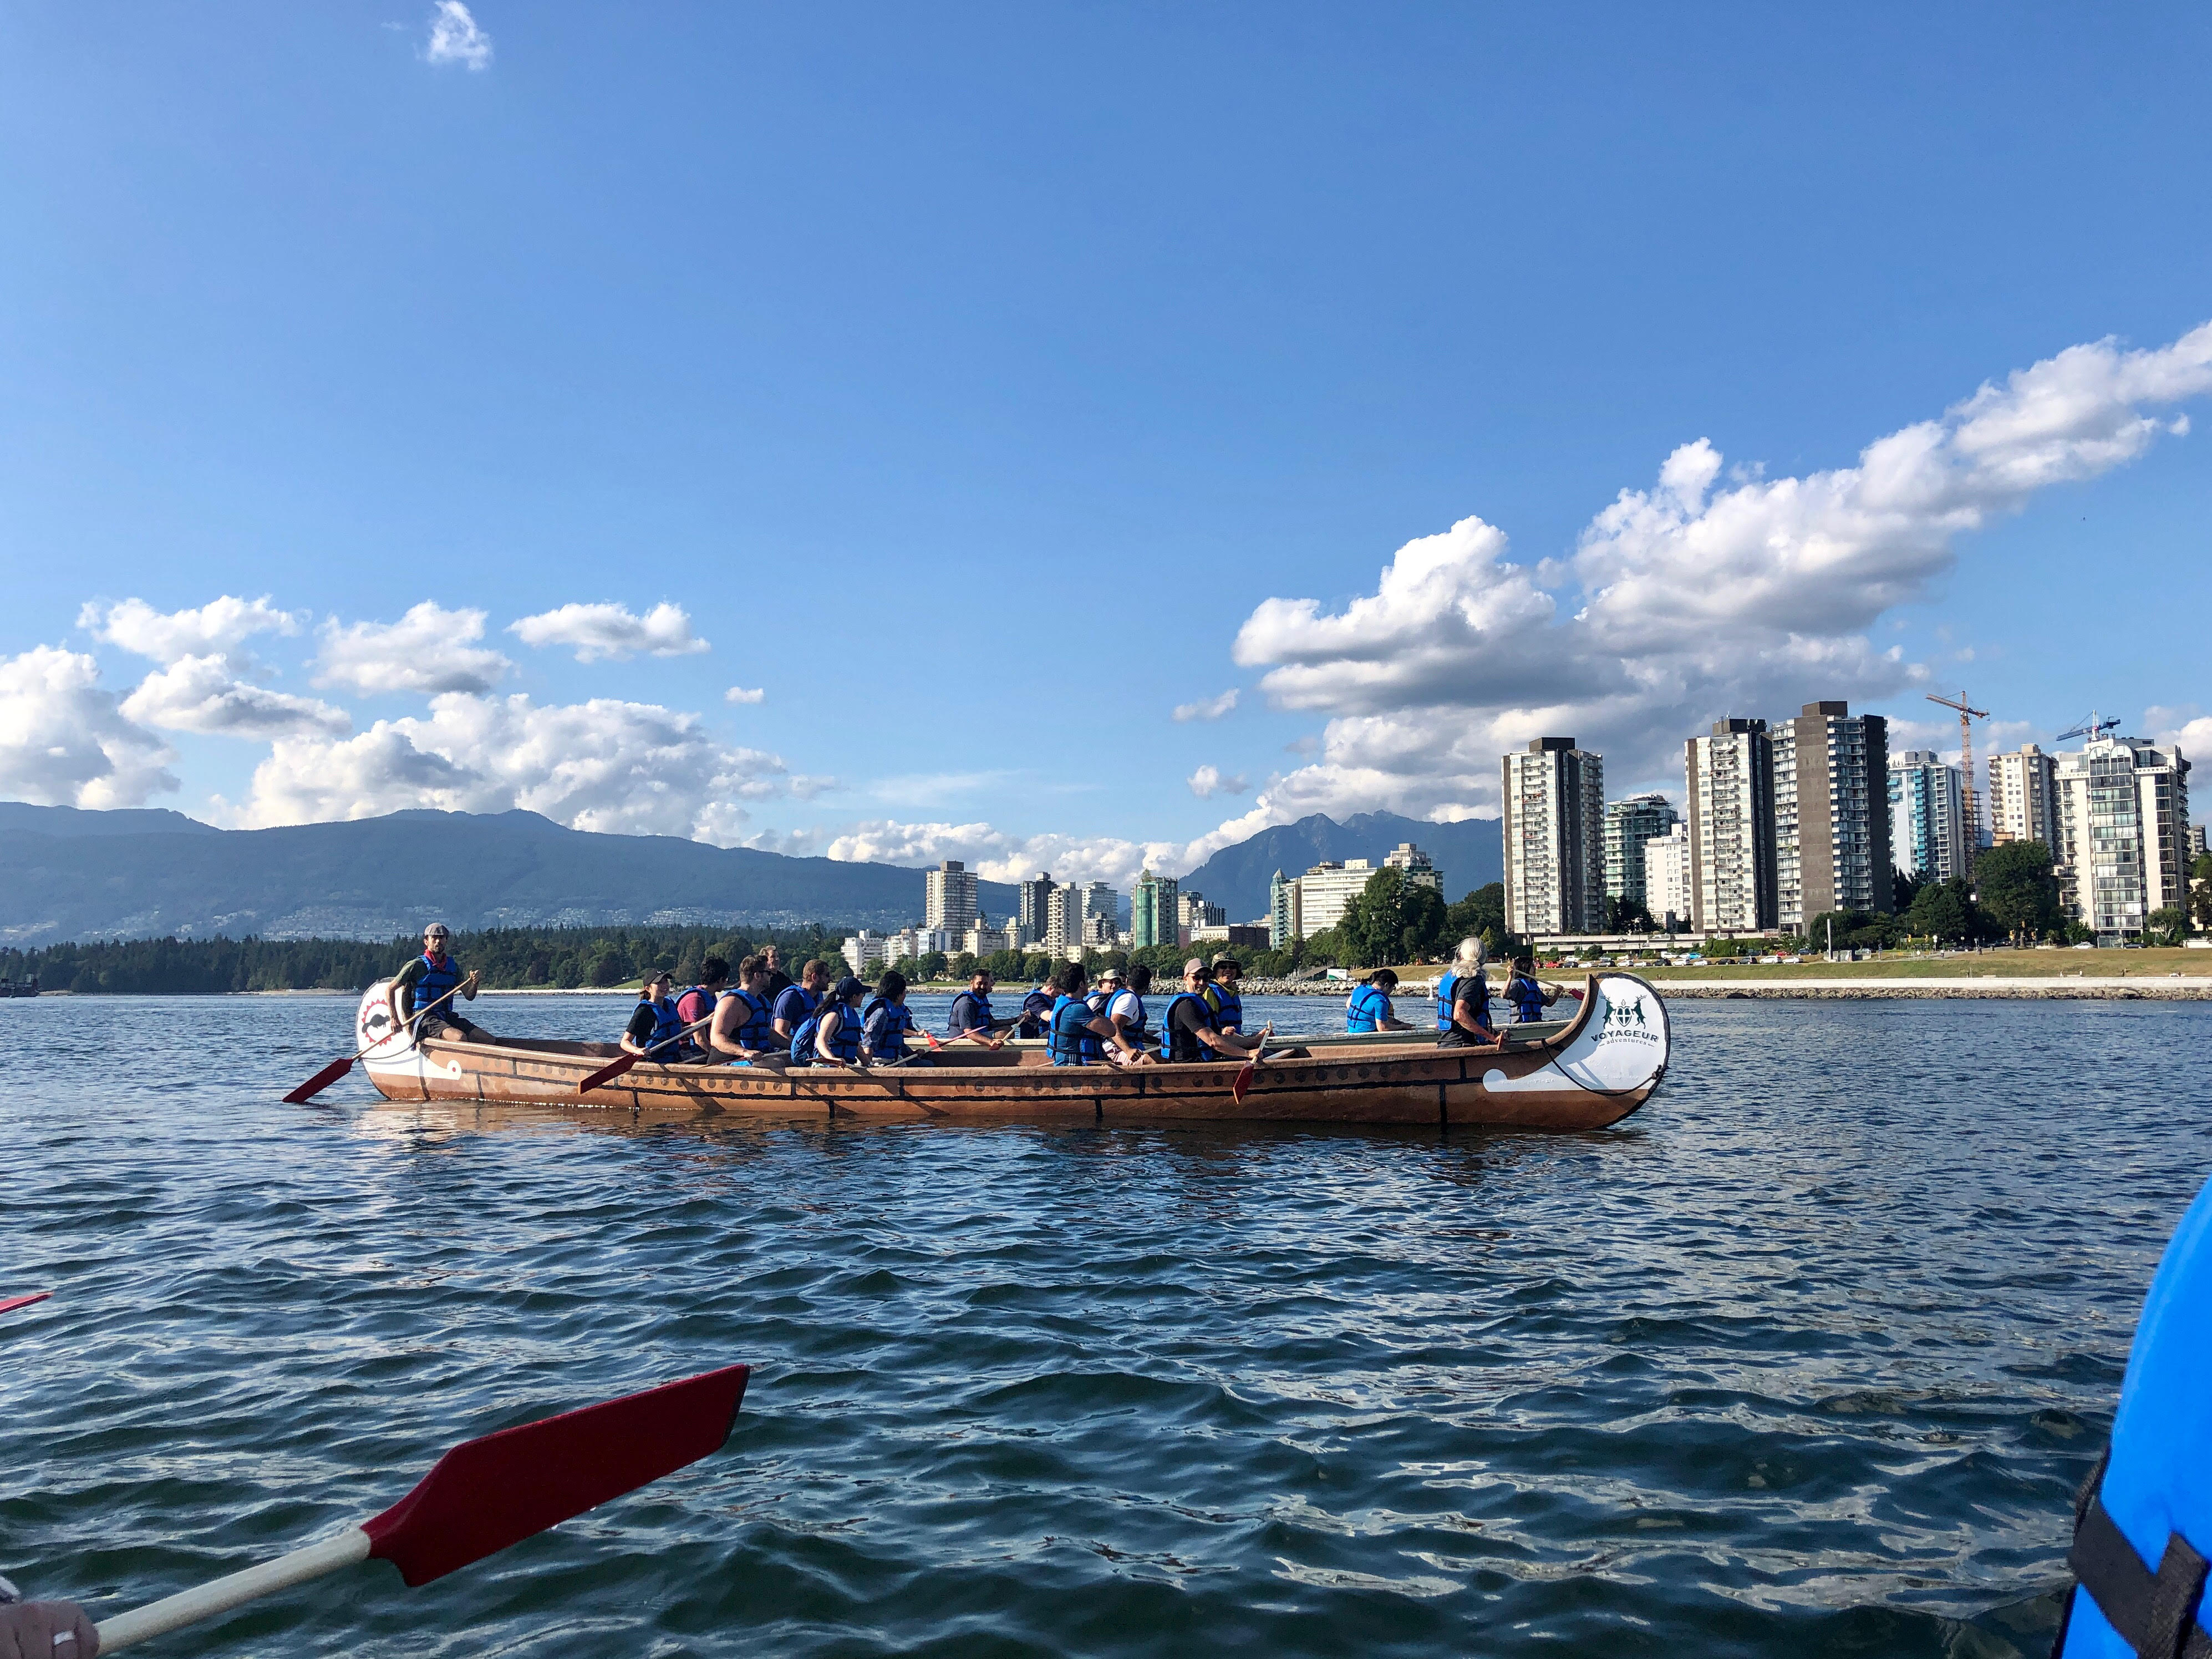 Sang's peers in a kayak overlooking Vancouver.